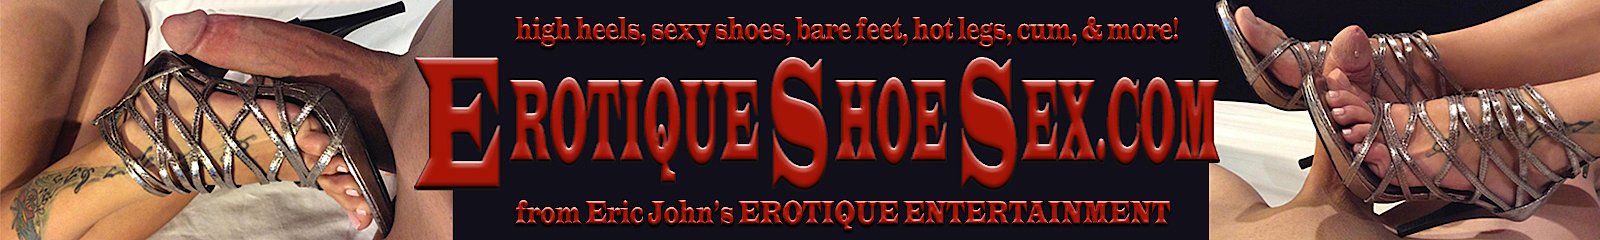 Erotique Shoe Sex